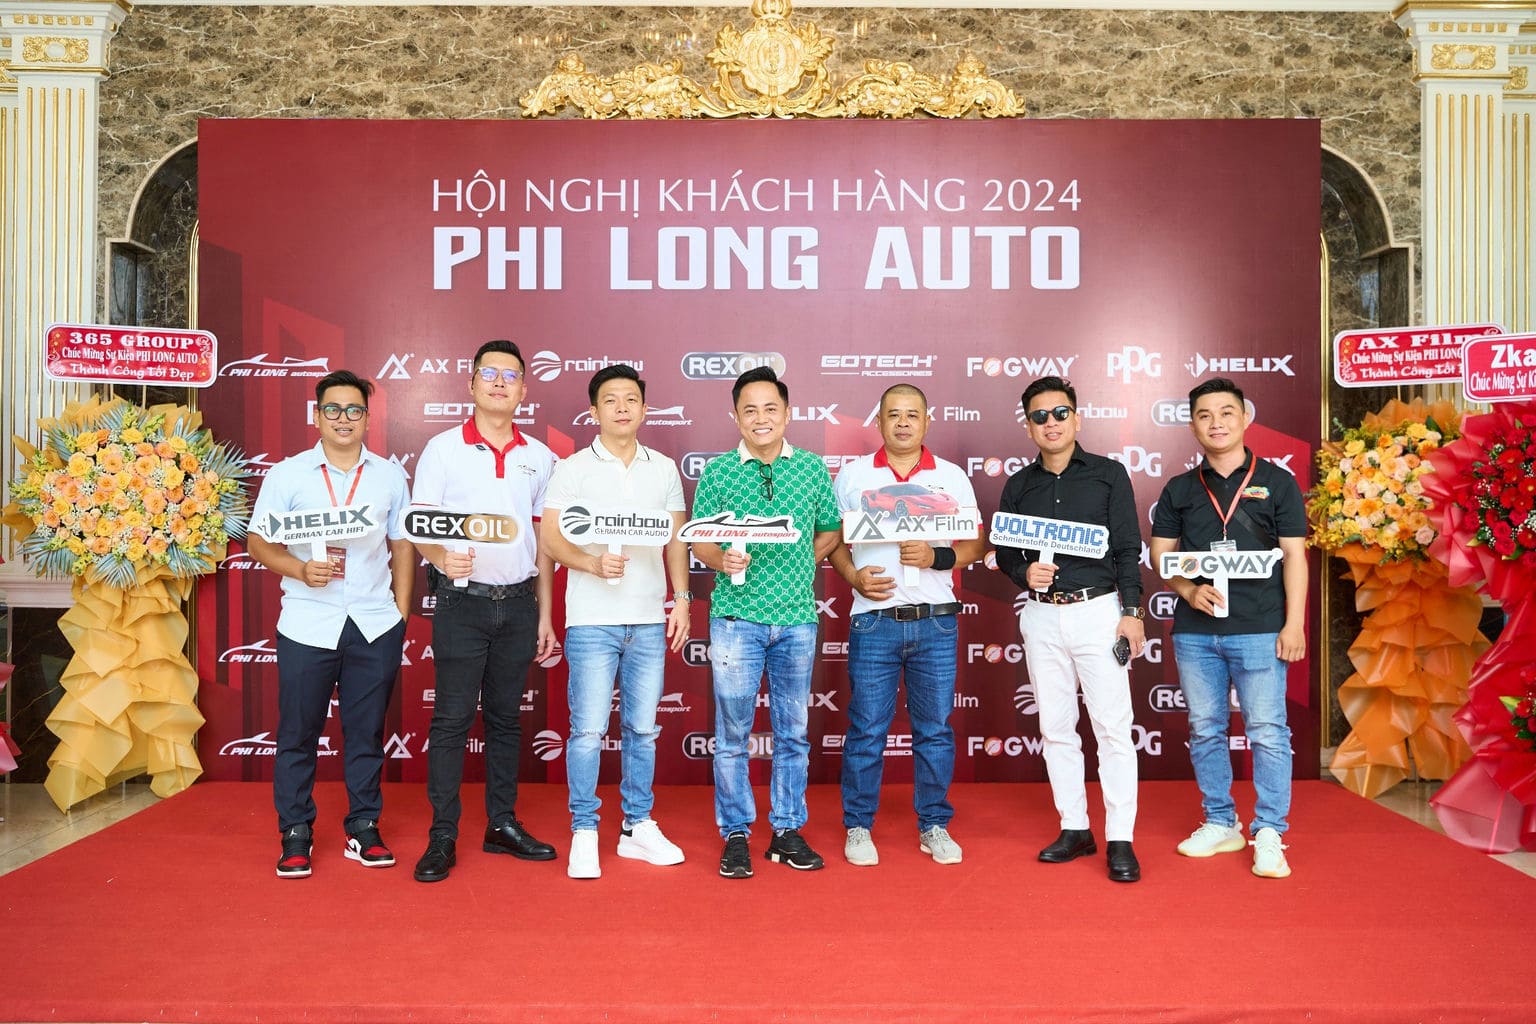 HOI NGHI KHACH HANG PHI LONG AUTO 2024 36 | Phi Long Auto